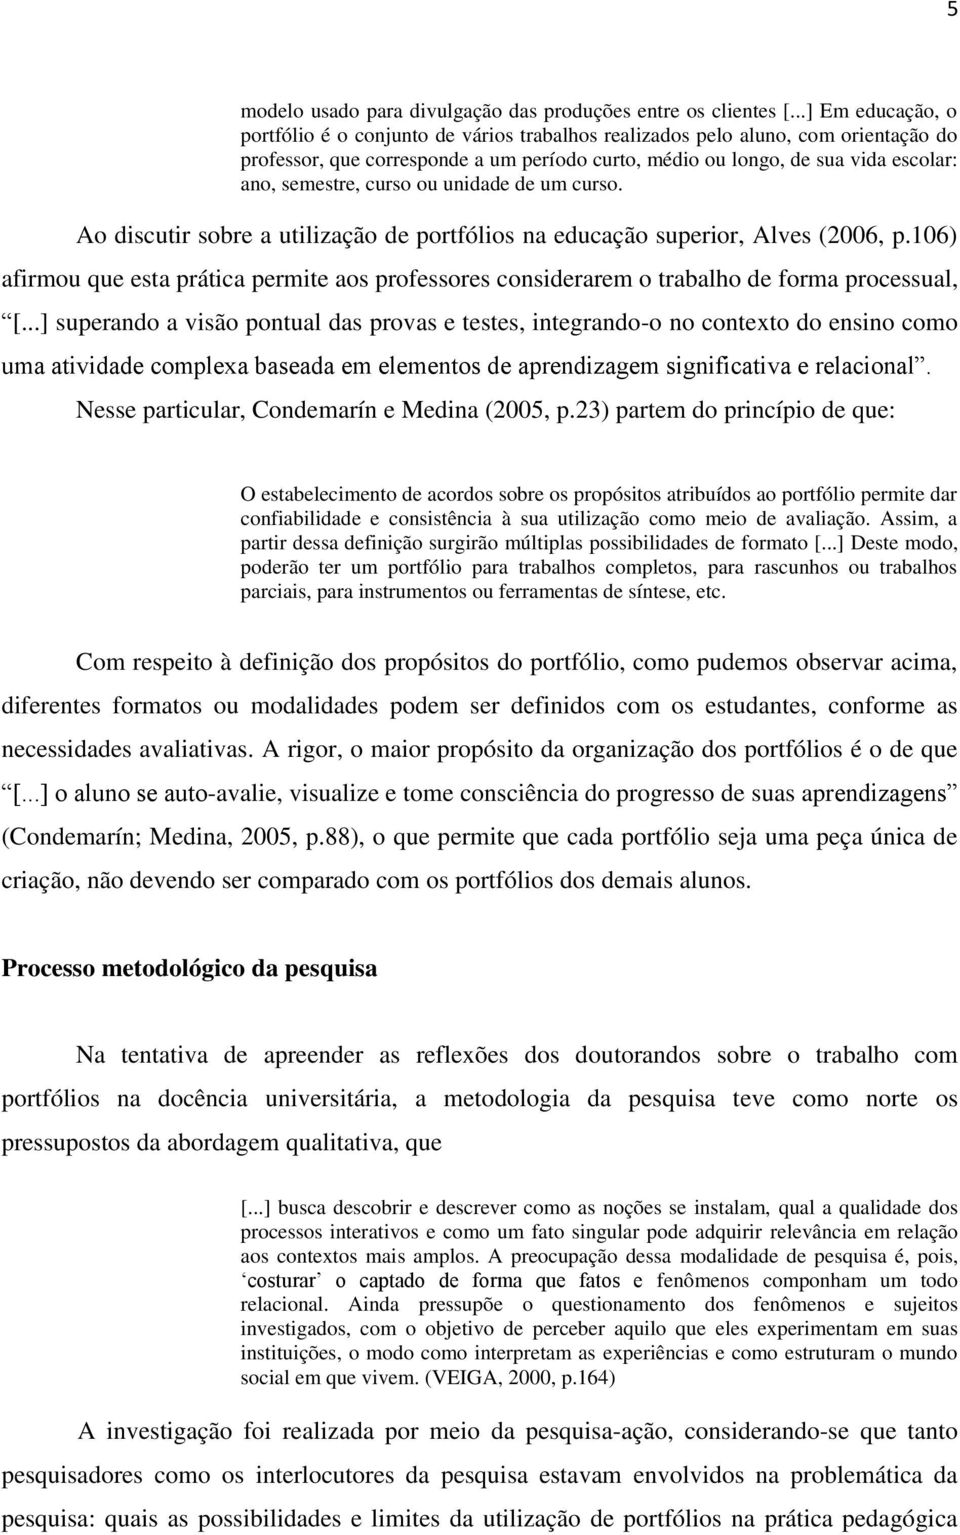 semestre, curso ou unidade de um curso. Ao discutir sobre a utilização de portfólios na educação superior, Alves (2006, p.